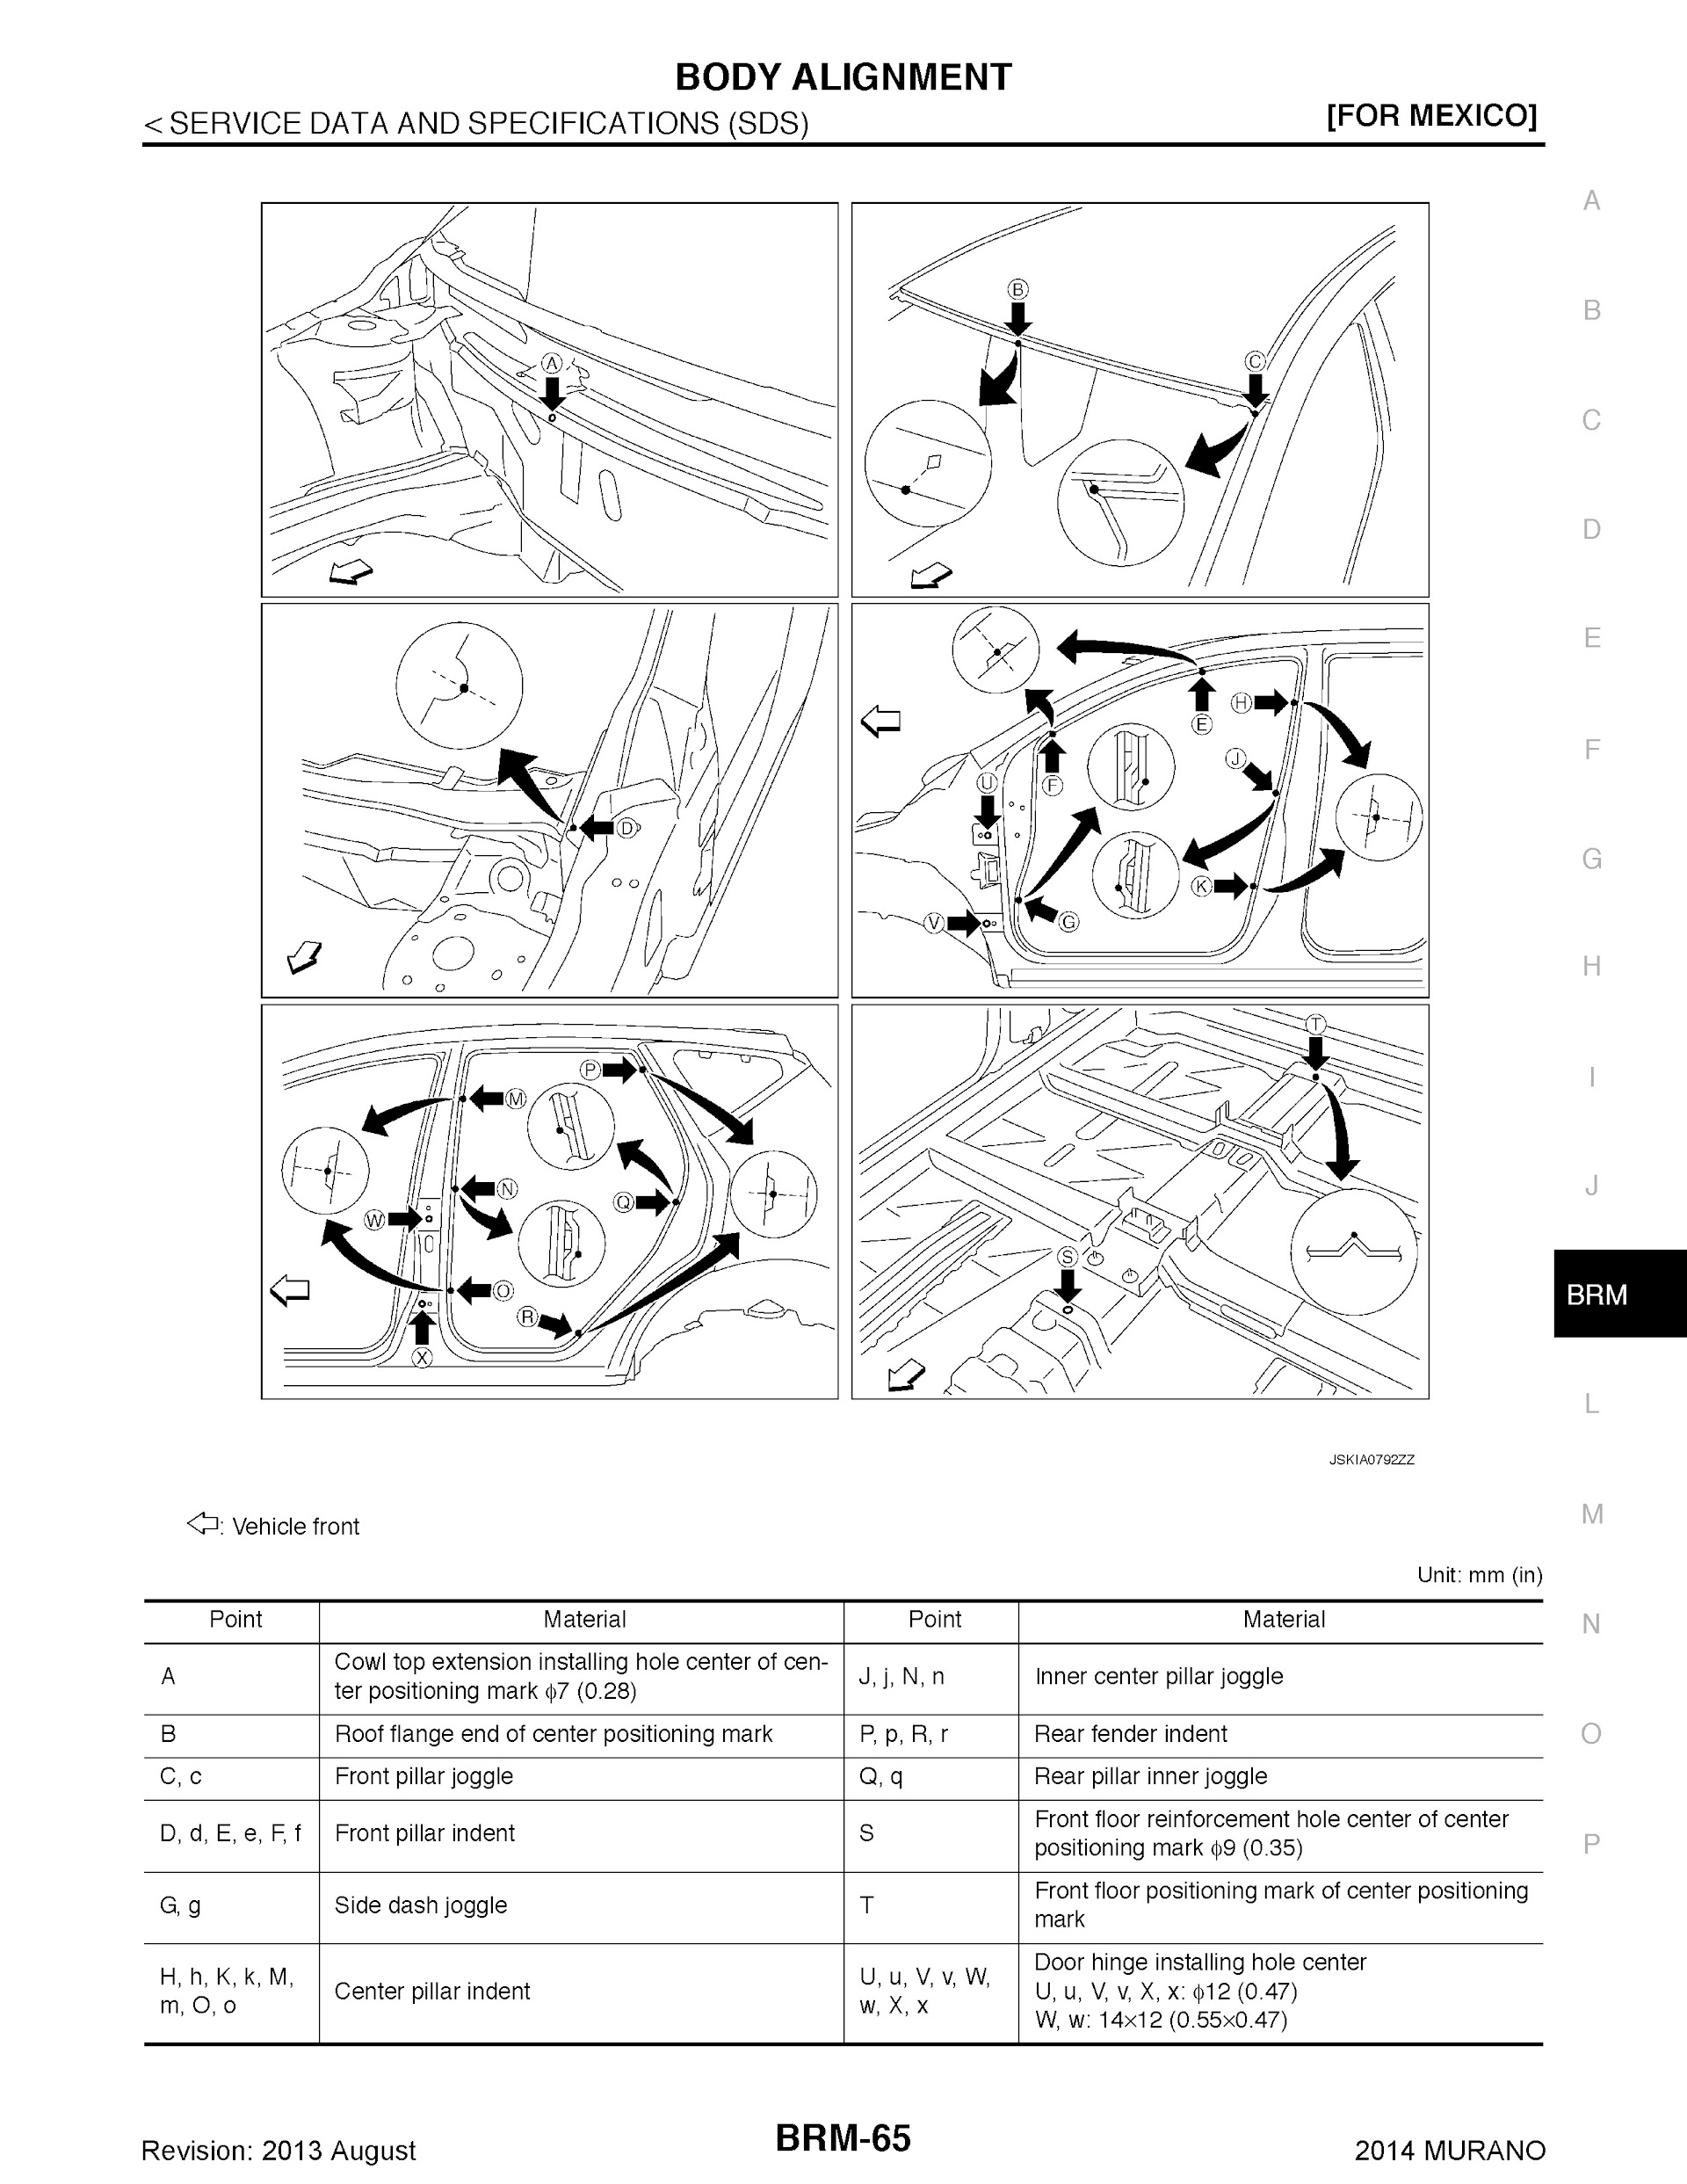 2009-2014 Nissan Murano Repair Manual, Body Alignment